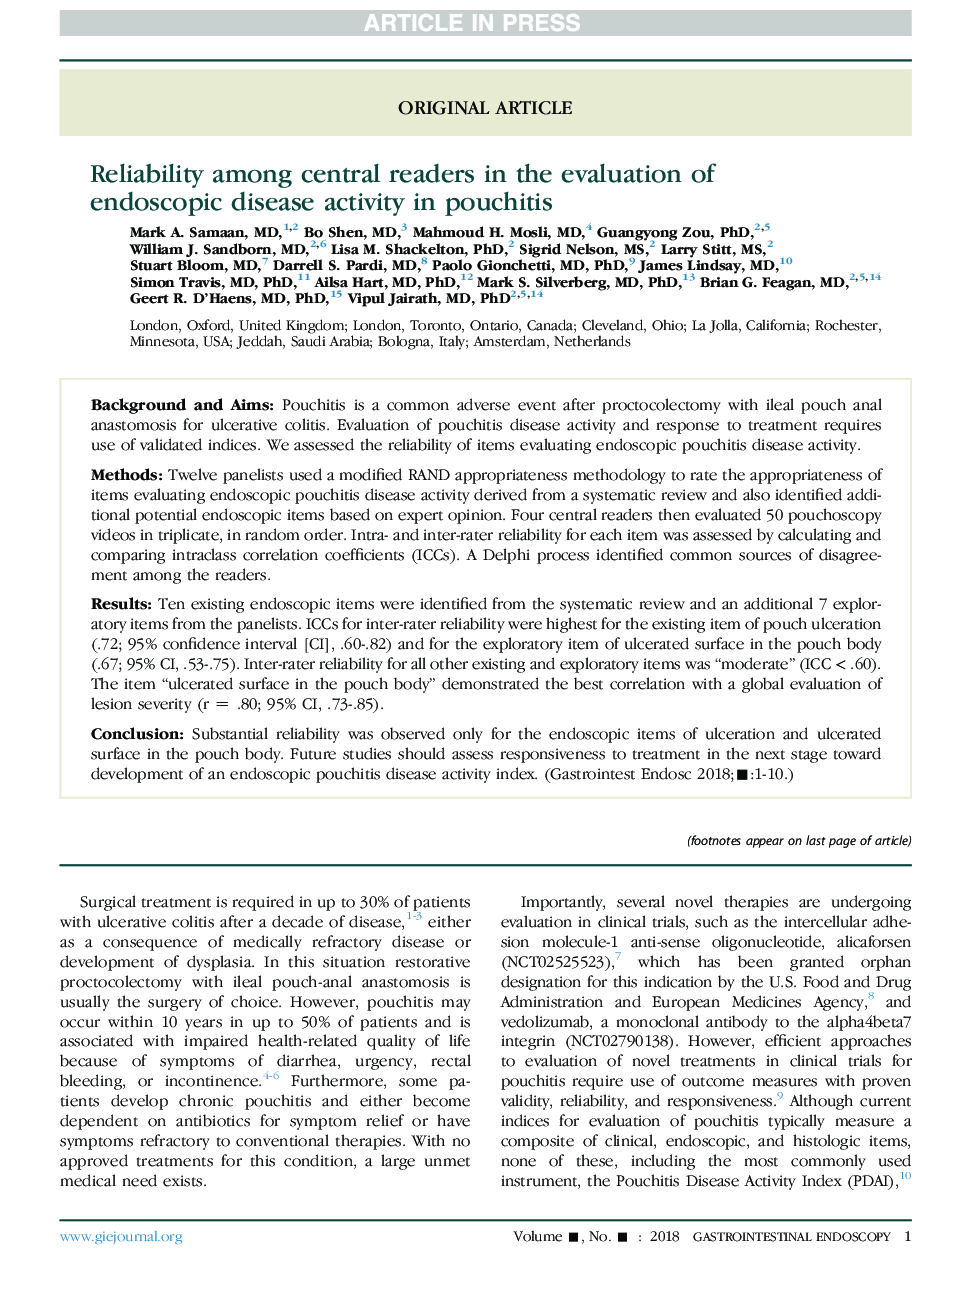 قابلیت اطمینان بین خوانندگان مرکزی در ارزیابی فعالیت بیماری آندوسکوپی در پوچیت 